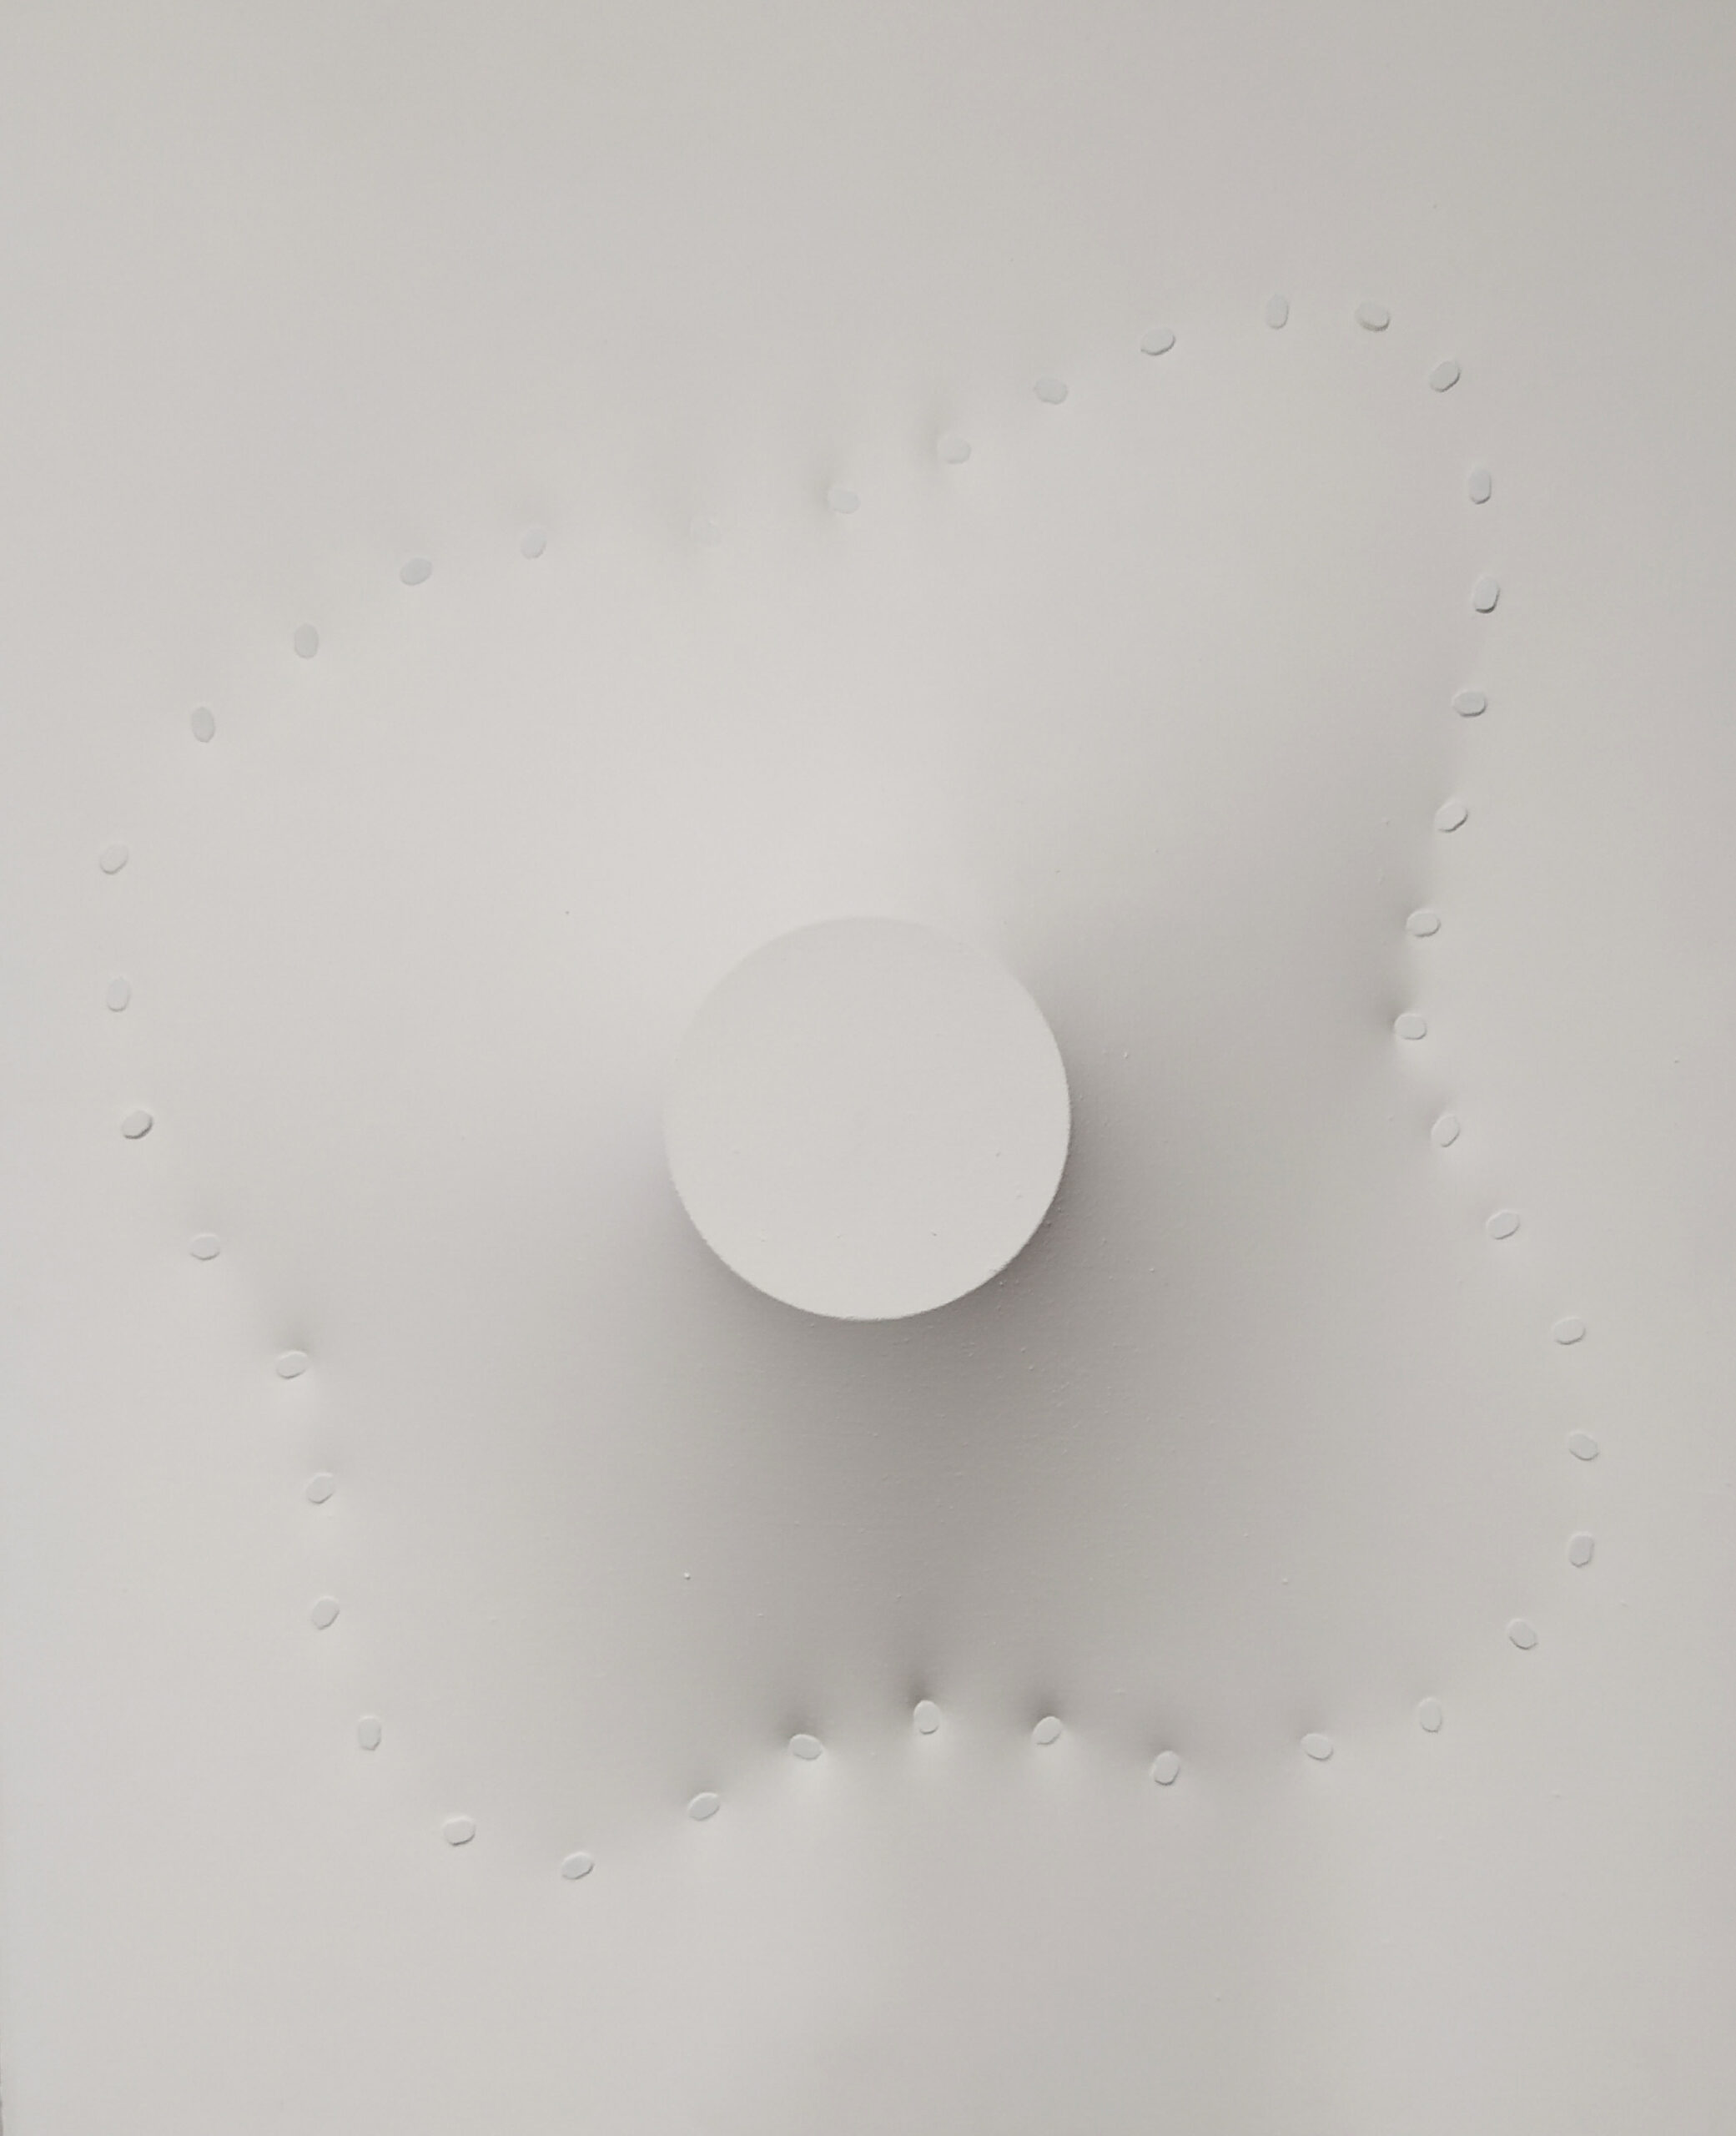 "A Cloud II" est une œuvre intrigante créée par l'artiste Norio Imai. Elle est constituée d'une combinaison inhabituelle de matériaux, comprenant de l'acrylique, du coton, un moule en métal et des punaises. Avec des dimensions de 46 cm de hauteur, 38 cm de largeur et 8 cm de profondeur, cette œuvre offre une présence physique et visuelle captivante. Les textures et les formes juxtaposées créent une composition énigmatique, évoquant la légèreté et la fluidité d'un nuage. Les punaises insérées dans le moule en métal ajoutent une touche de relief et de dimensionnalité à l'œuvre, invitant le spectateur à une exploration tactile. "A Cloud II" incarne l'expression artistique innovante de Norio Imai, offrant une expérience esthétique unique et immersive.